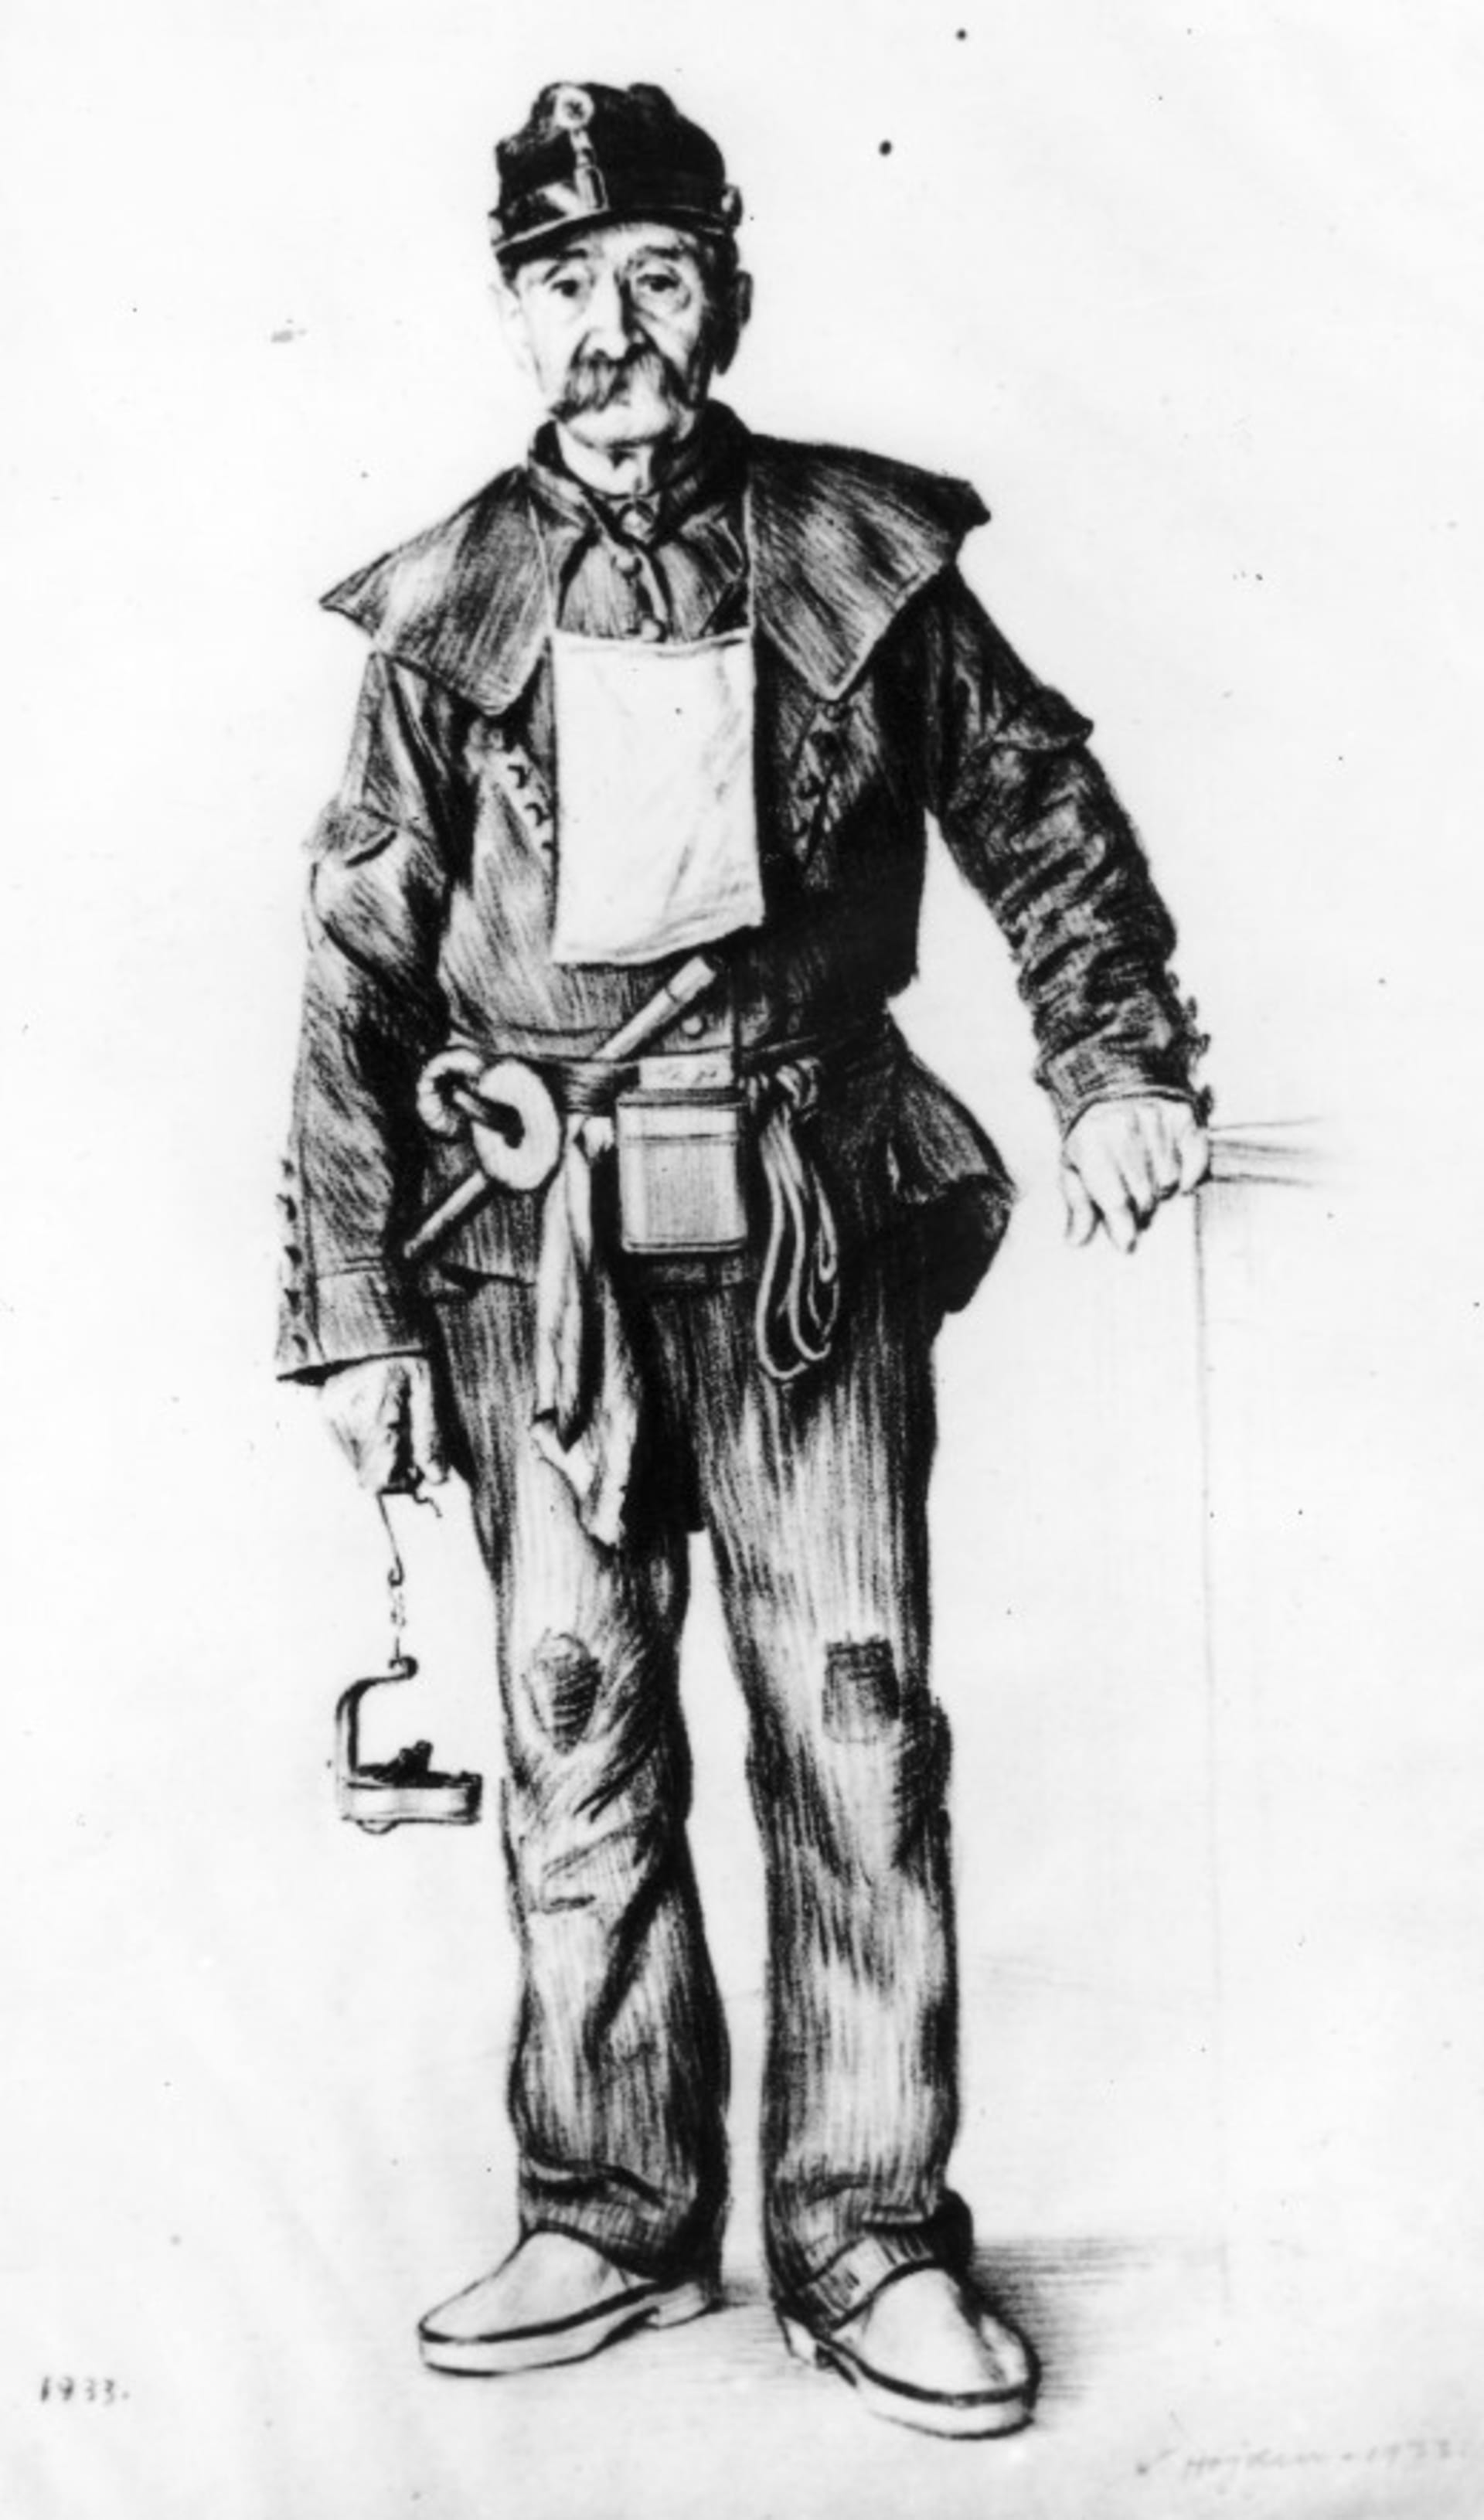 Horník v pracovním oděvu z 19. a počátku 20. století